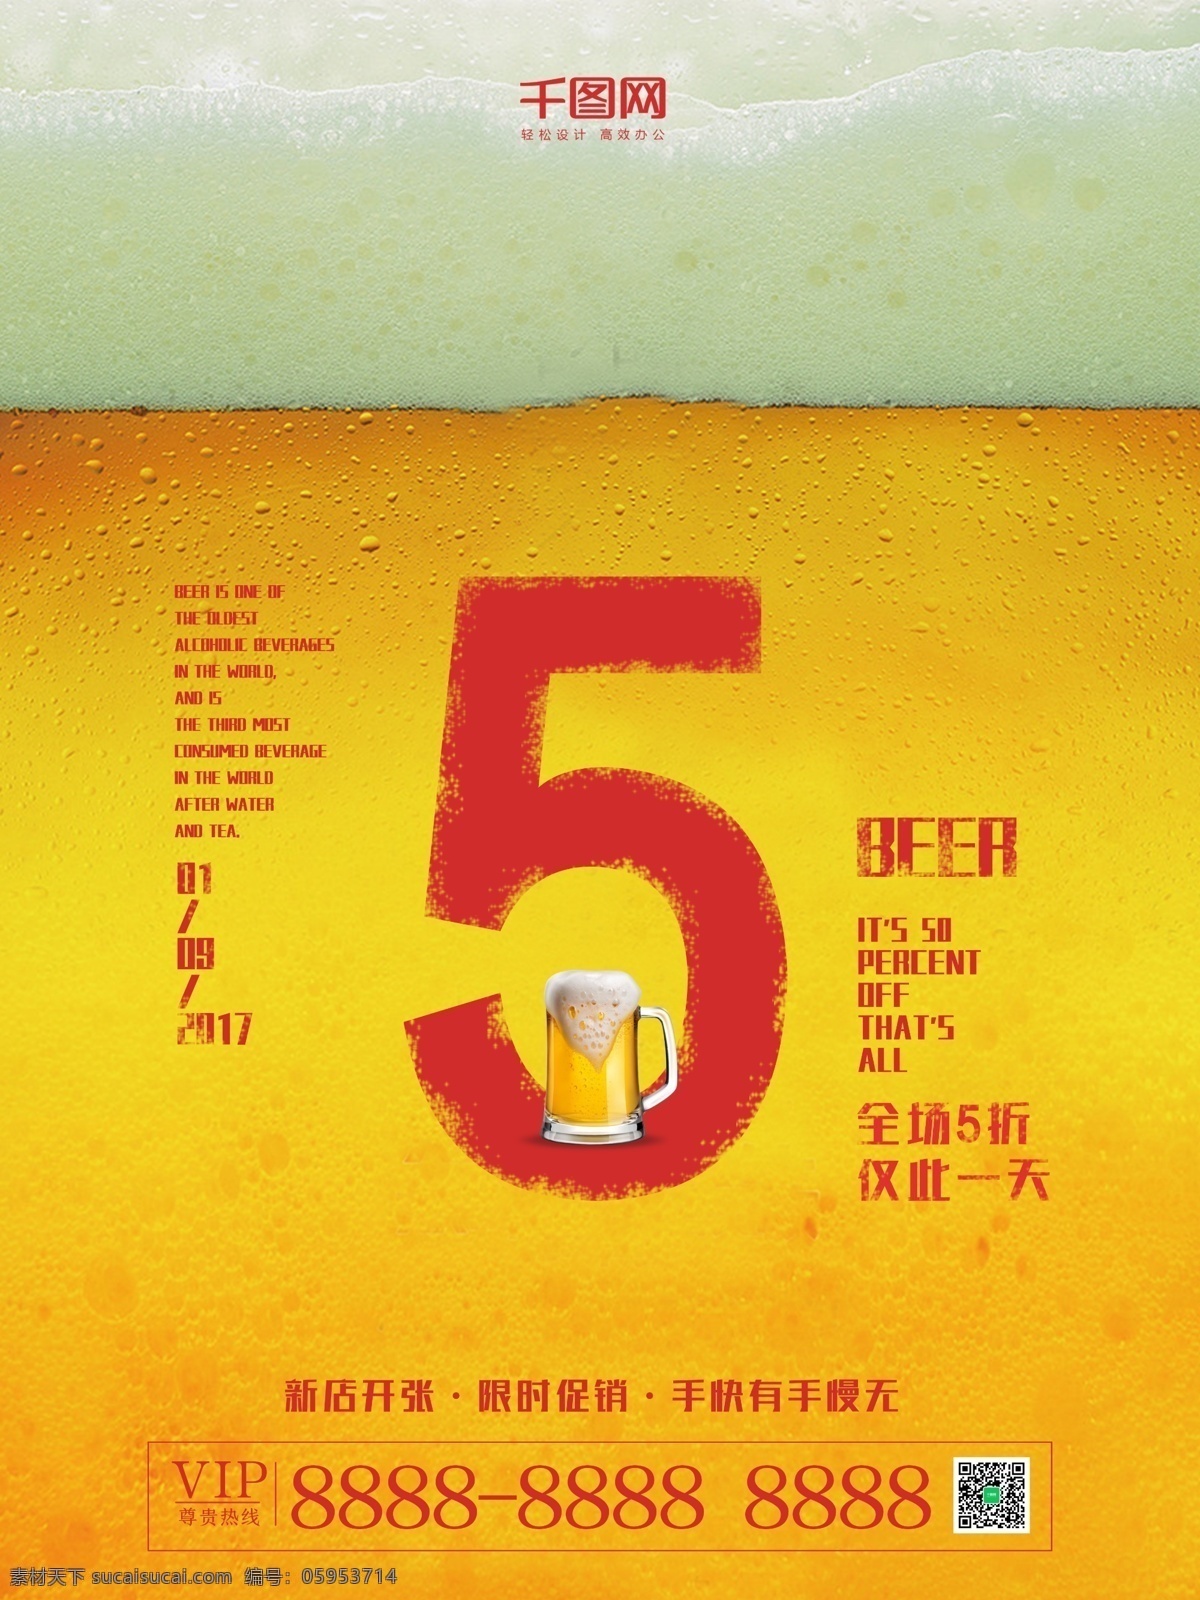 创意 简约 黄色 啤酒 促销 海报 数字 红色 纹理 液体 商业 食品 饮料 杯子 泡泡 气泡 水泡 优惠